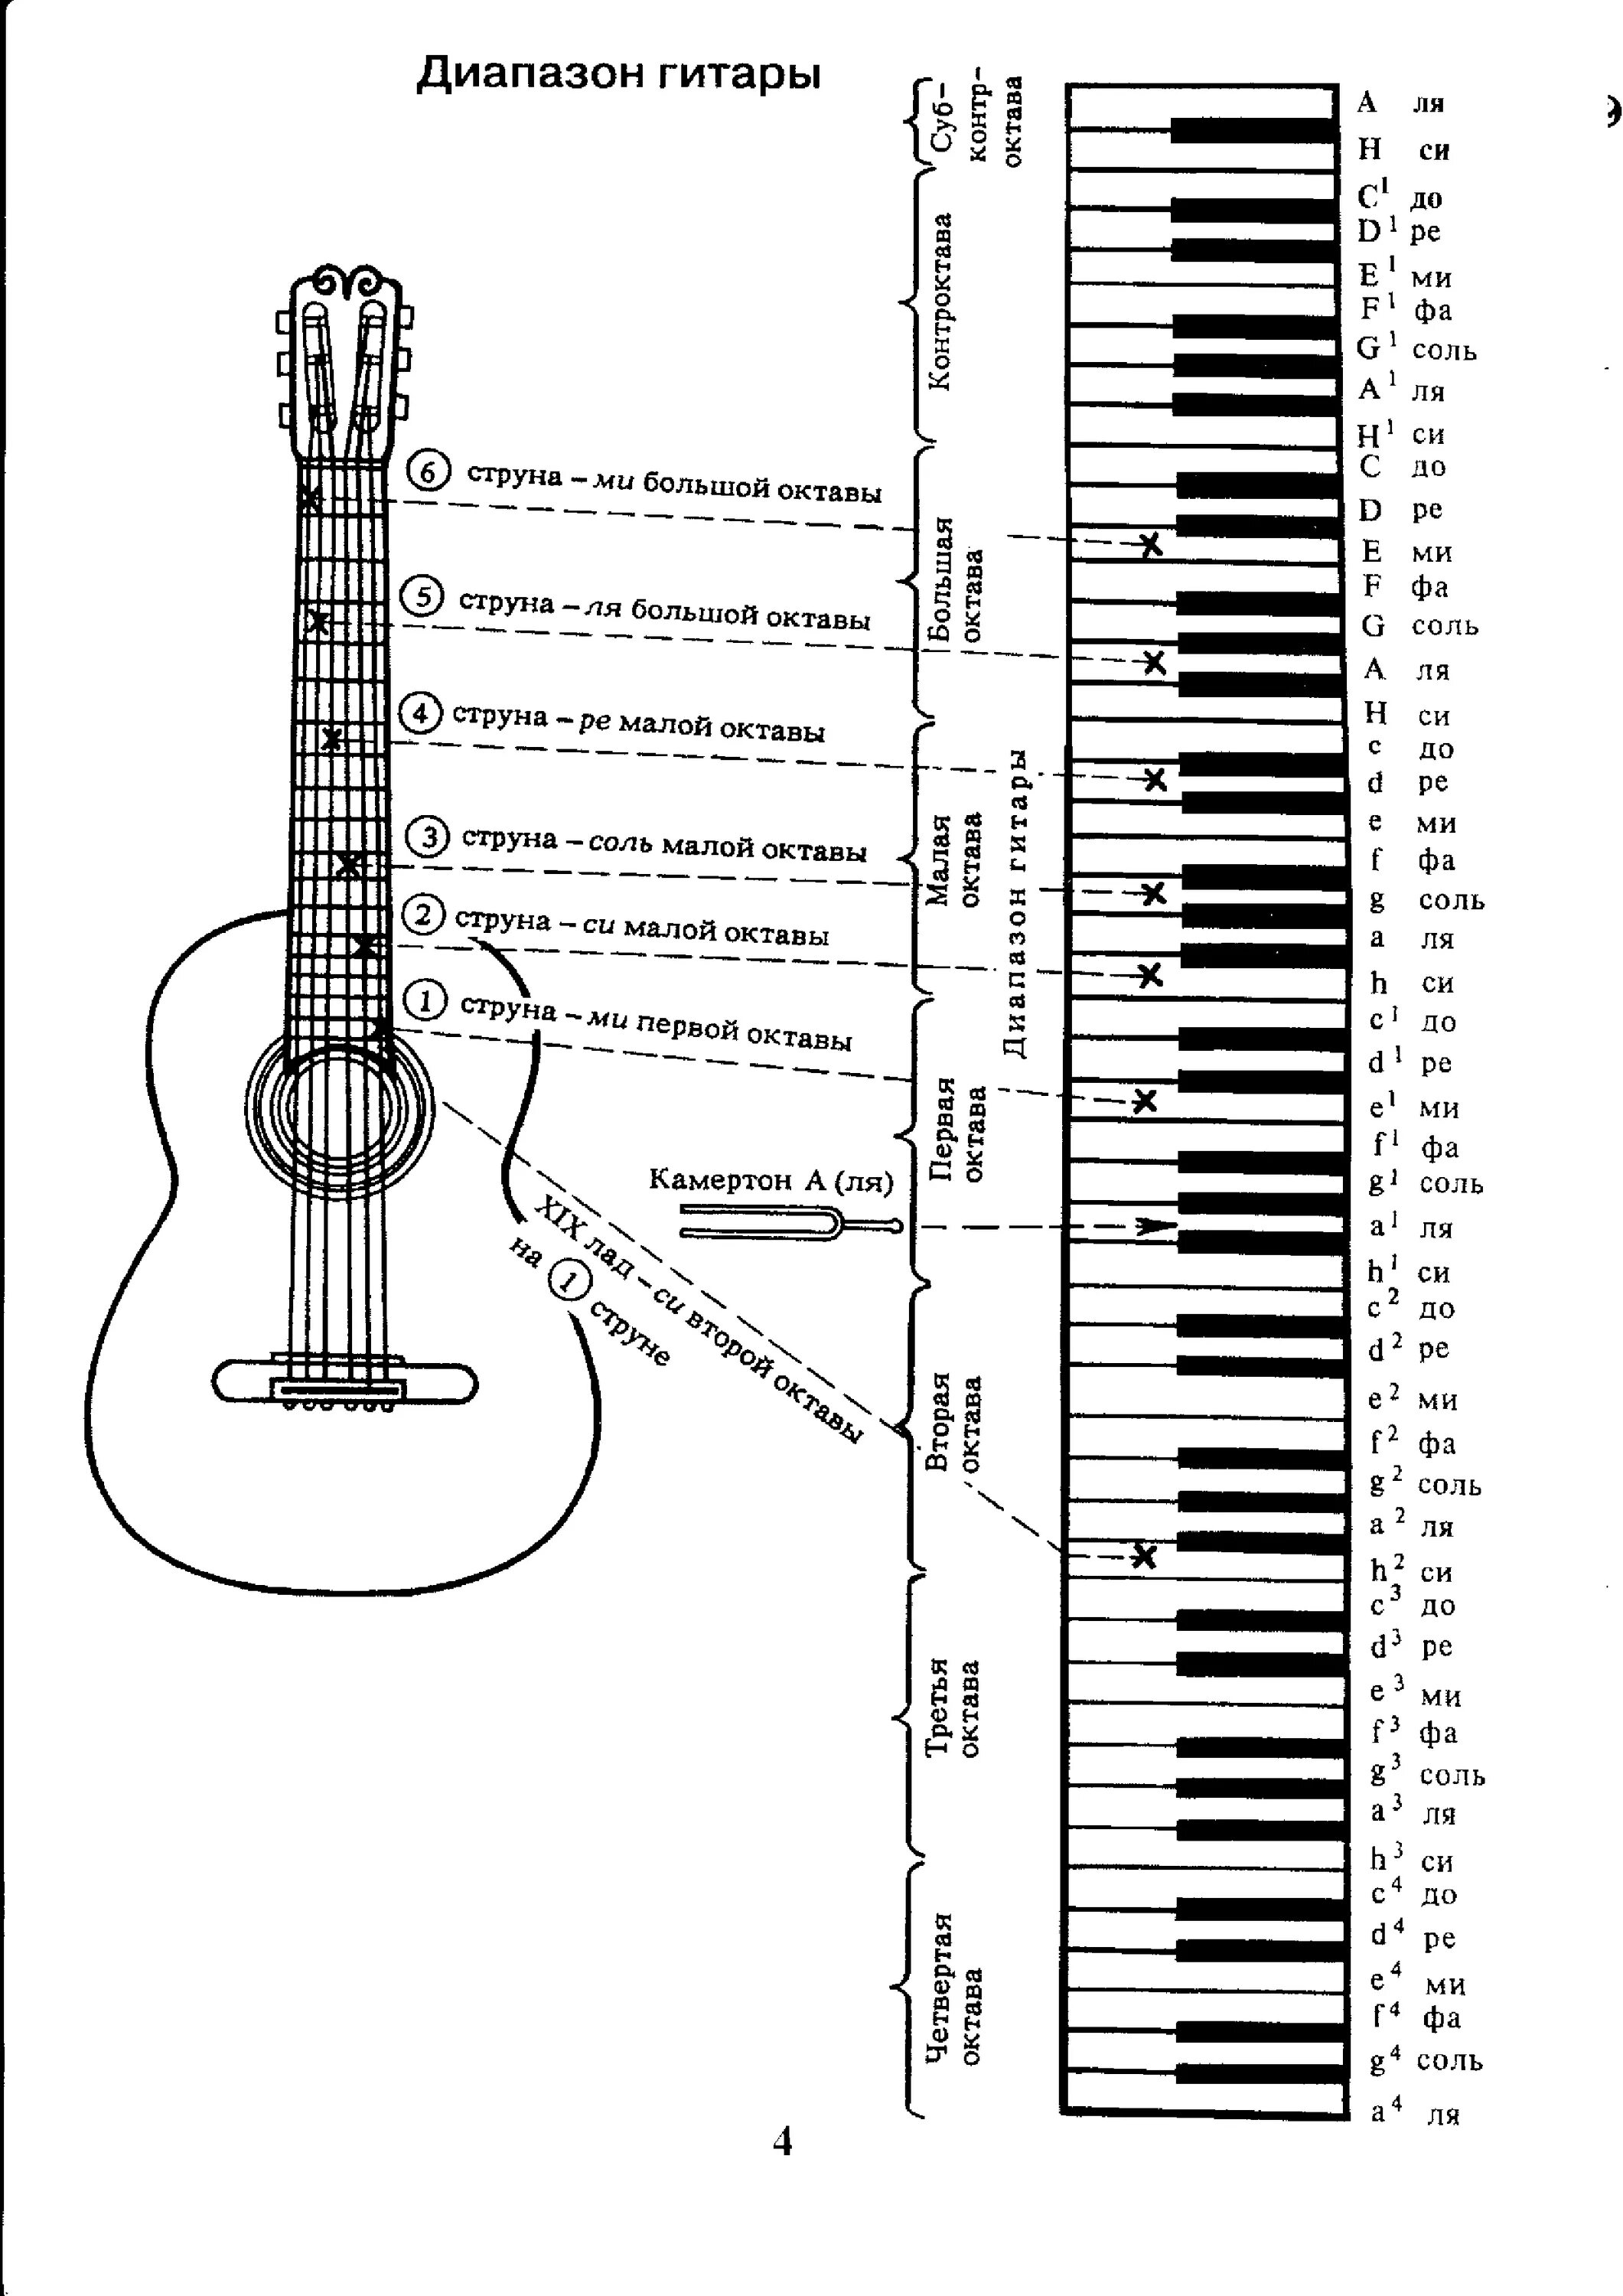 Аппликатура аккордов для гитары 6 струн для начинающих. Ноты на гитарном грифе 6 струнной. Лады на 6 струнной гитаре для начинающих. Схема гитары классической 6 струнной. 6 струнной звуки